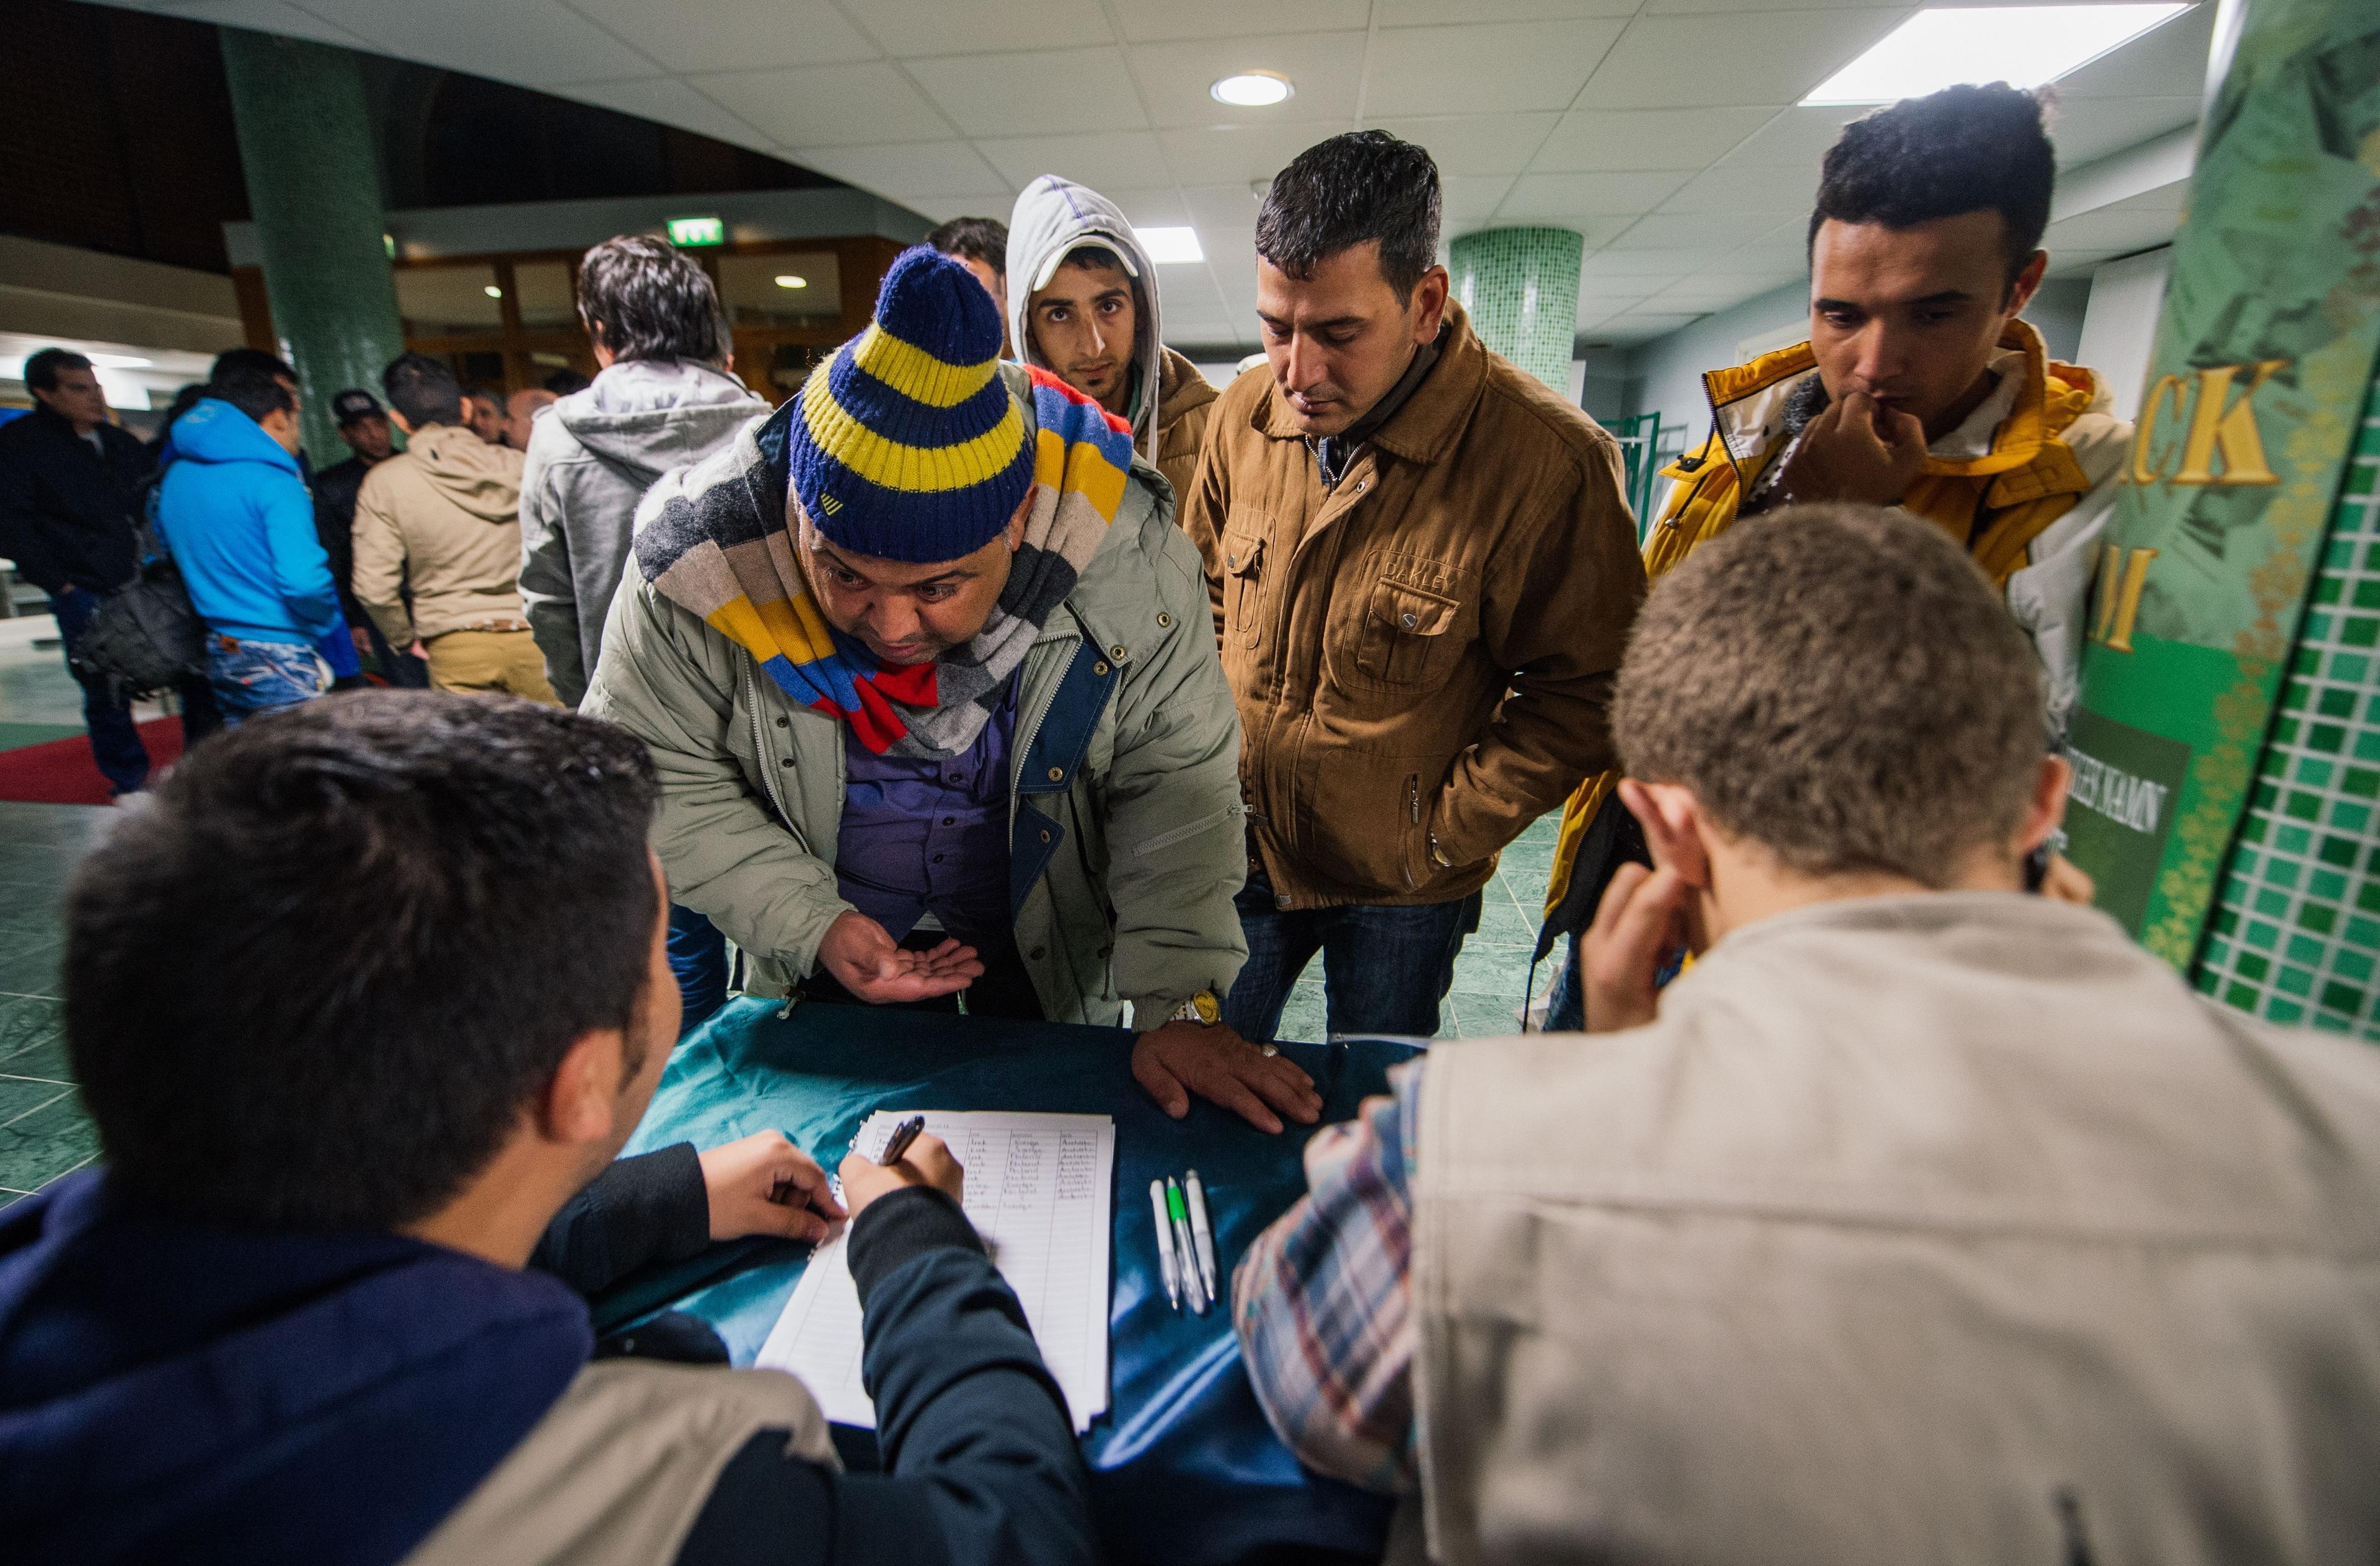  Flyktingar tas emot och registreras den 16 oktober i Stockholm. Regeringen föreslår att en allt större del av biståndet ska läggas på flyktingmottagandet i Sverige. Utsatta ställs emot varandra när biståndet minskas, menar svenska hjälporganisationer. (Foto: Jonathan Nackstrand/AFP/Getty Images)